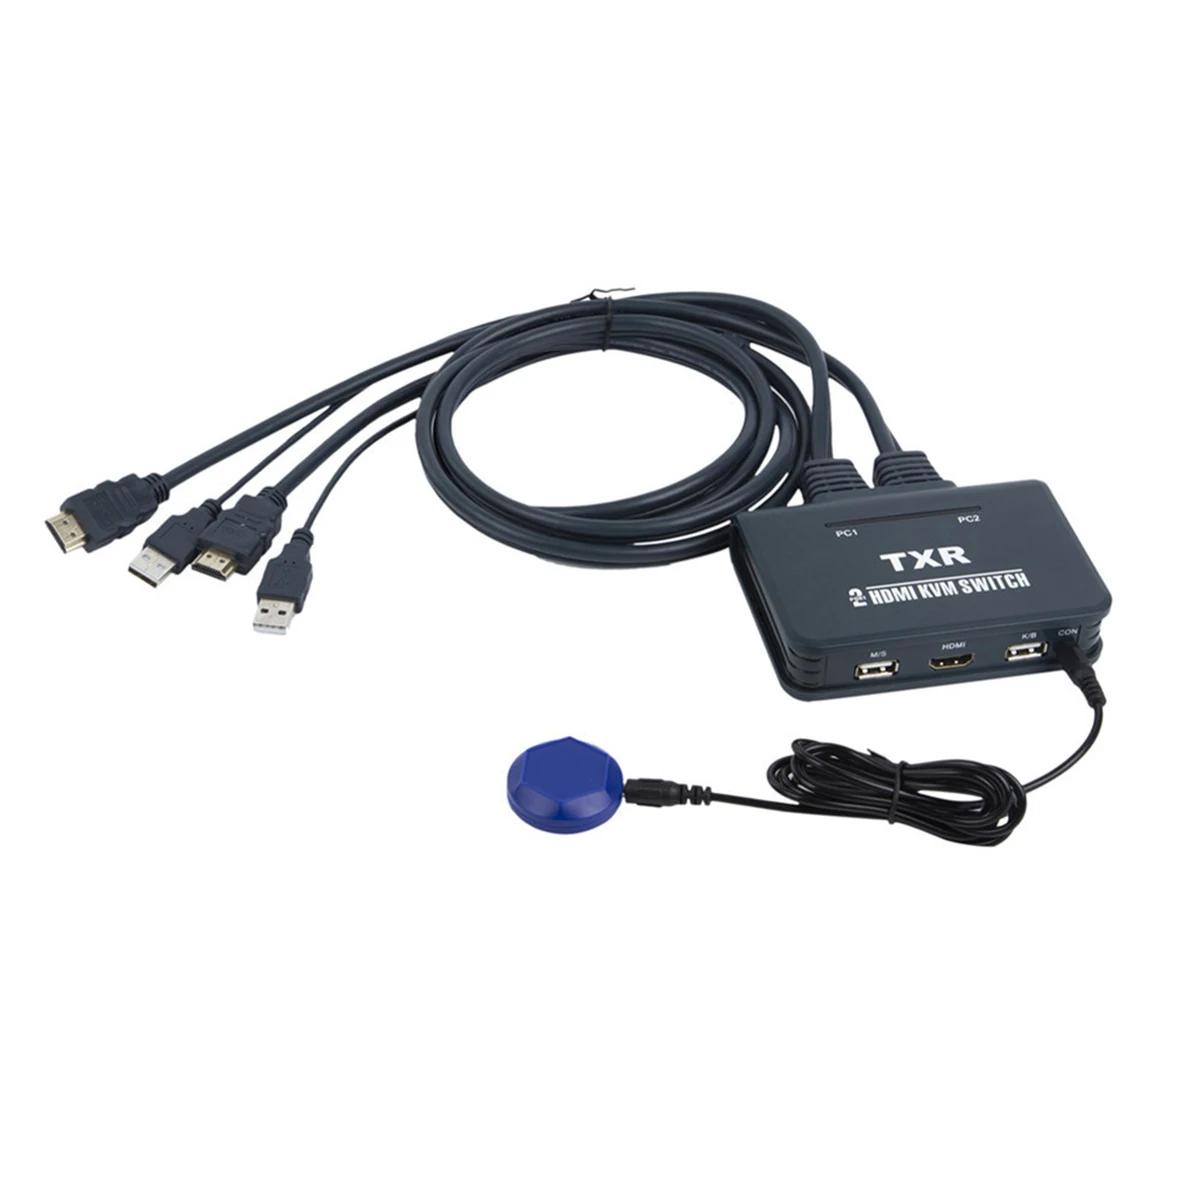 2 порта HDMI KVM переключатель с кабелями EL-21UHC KVM переключатель 2 порта адаптер Универсальный